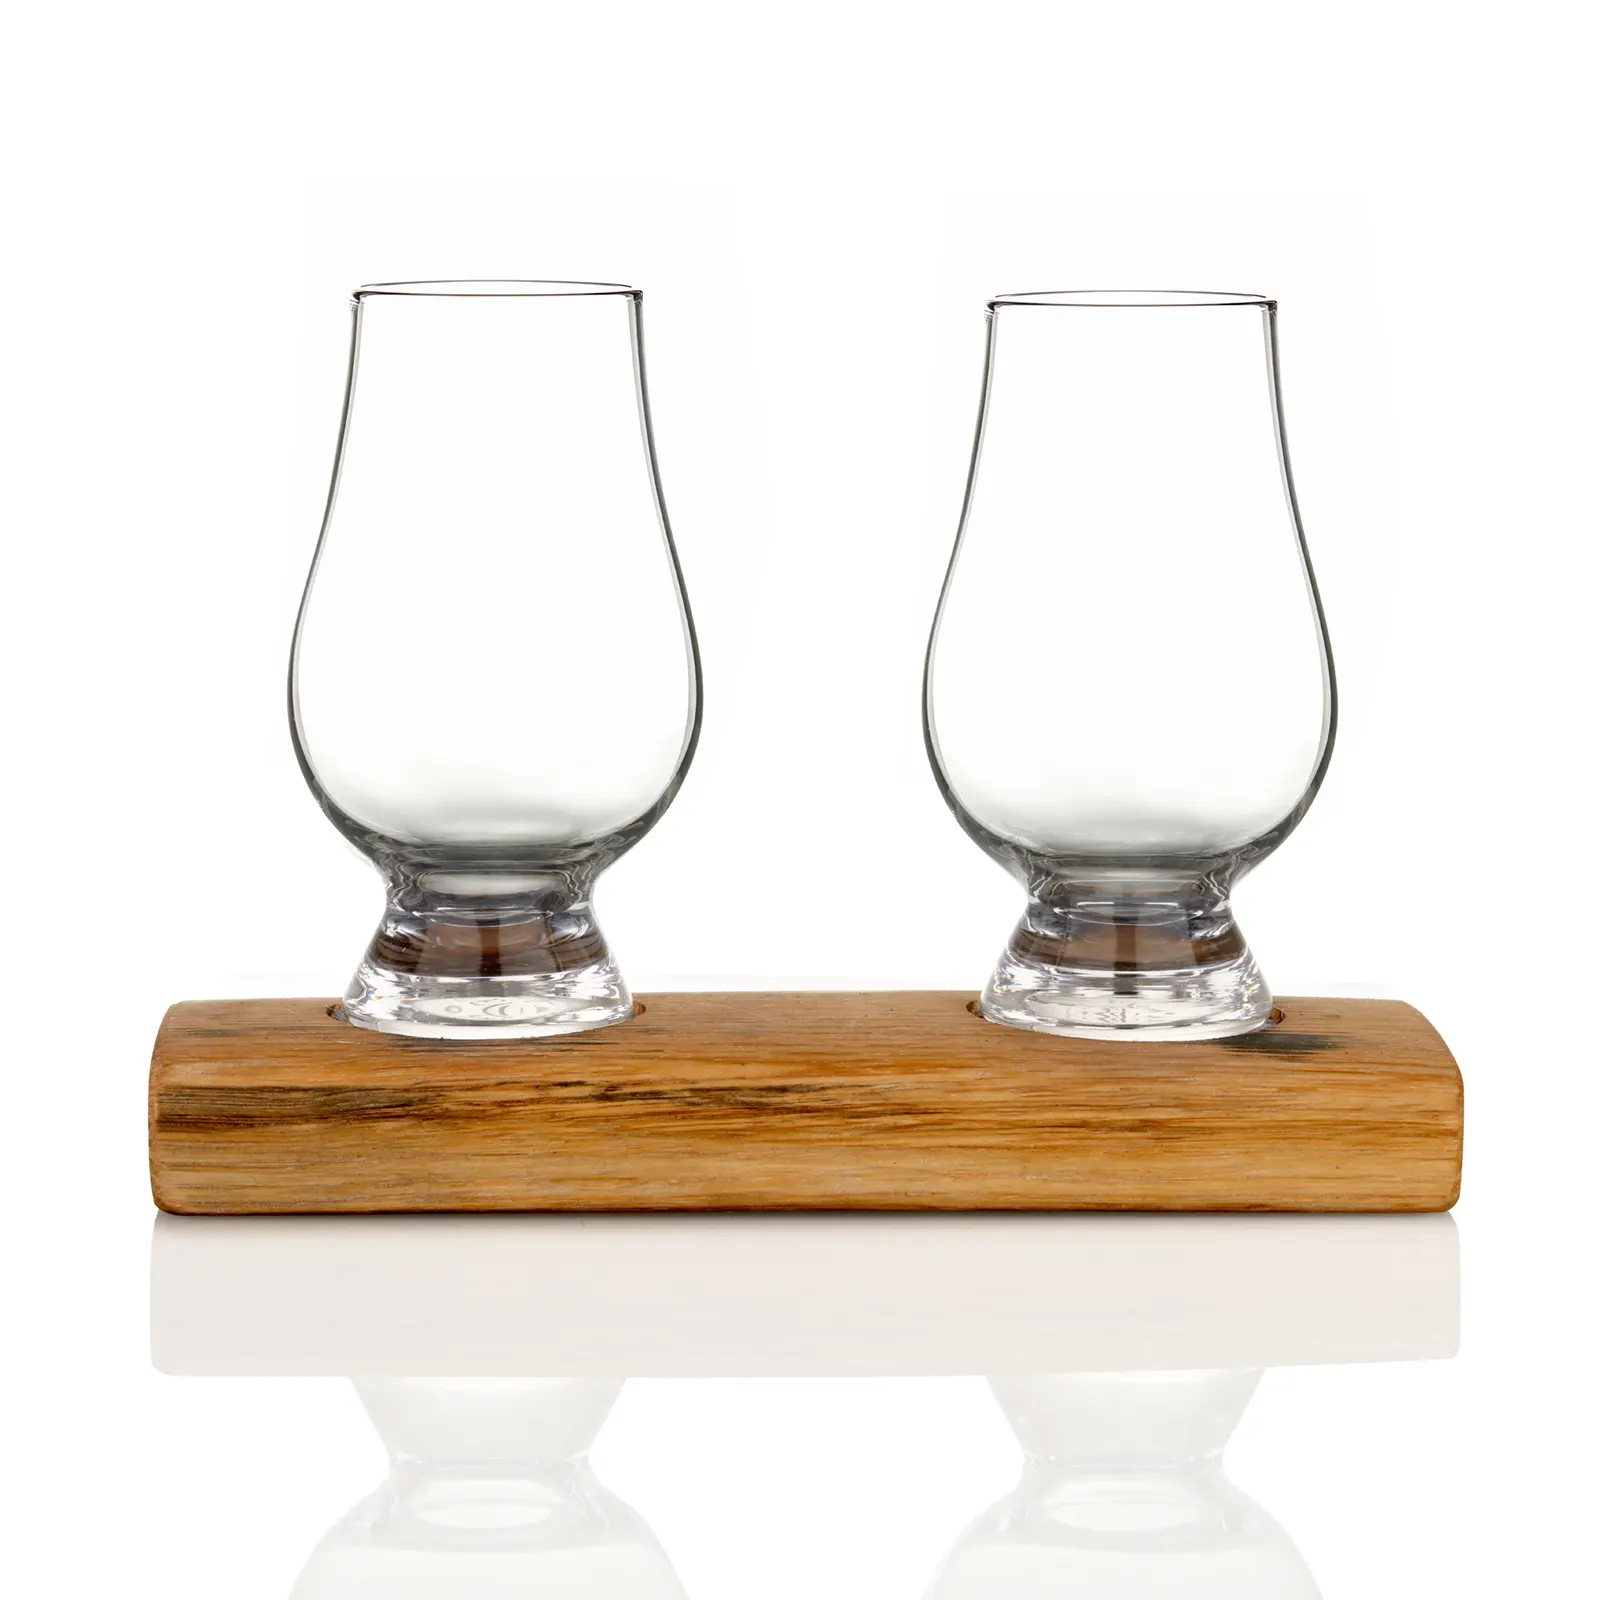 Whisky Fass Flight Tray aus Eiche - passend für 2 Glencairn Tasting Gläser